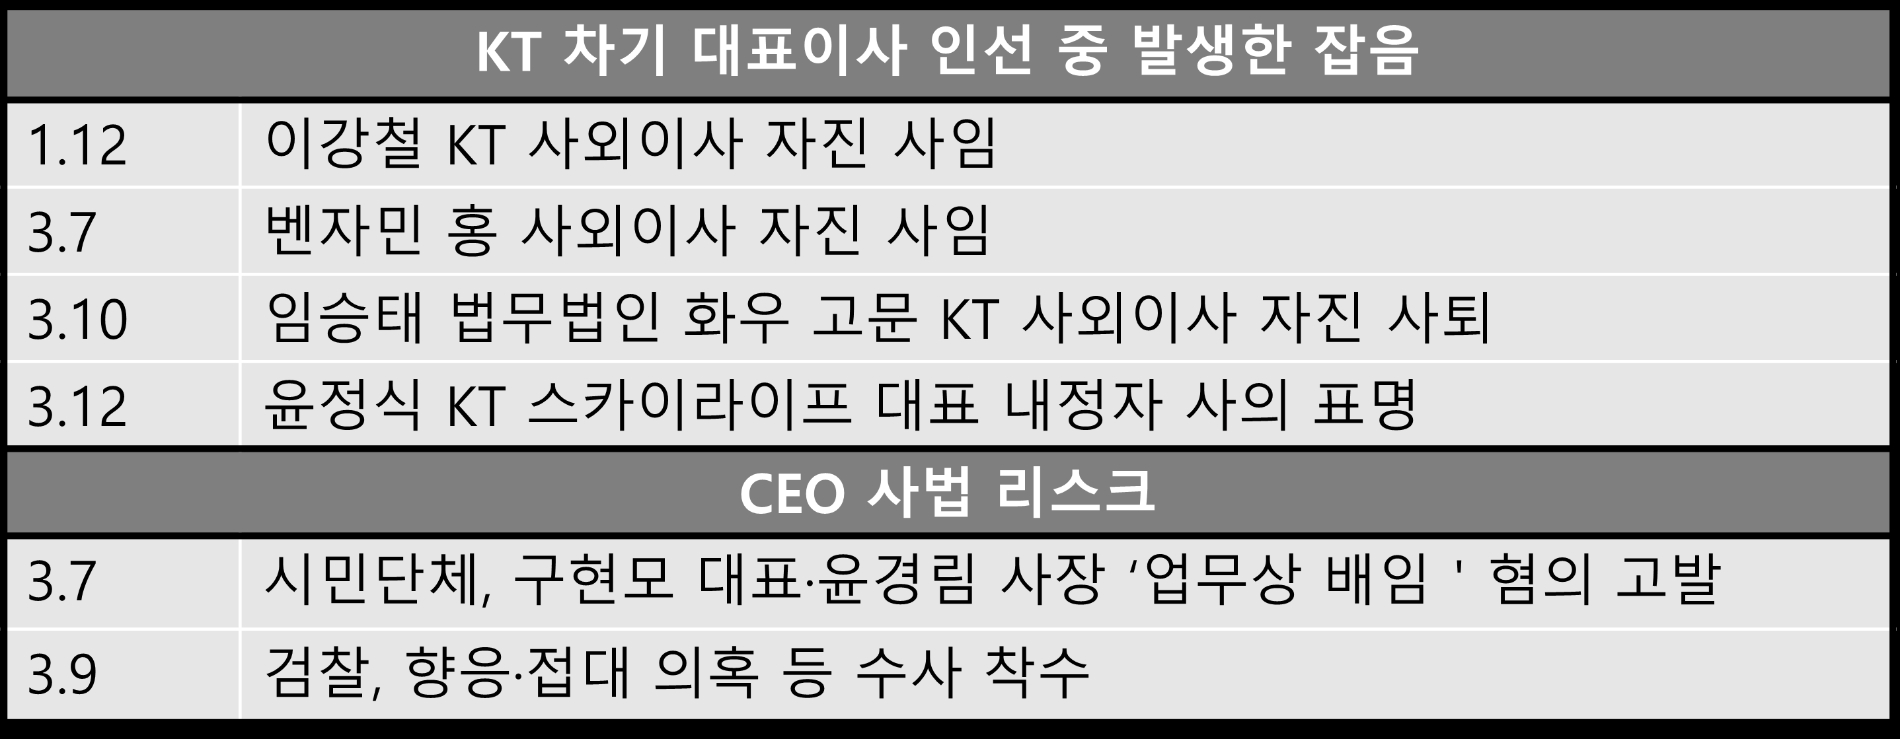 KT 차기 대표이사 인선 중 발생한 잡음 및 논란. 